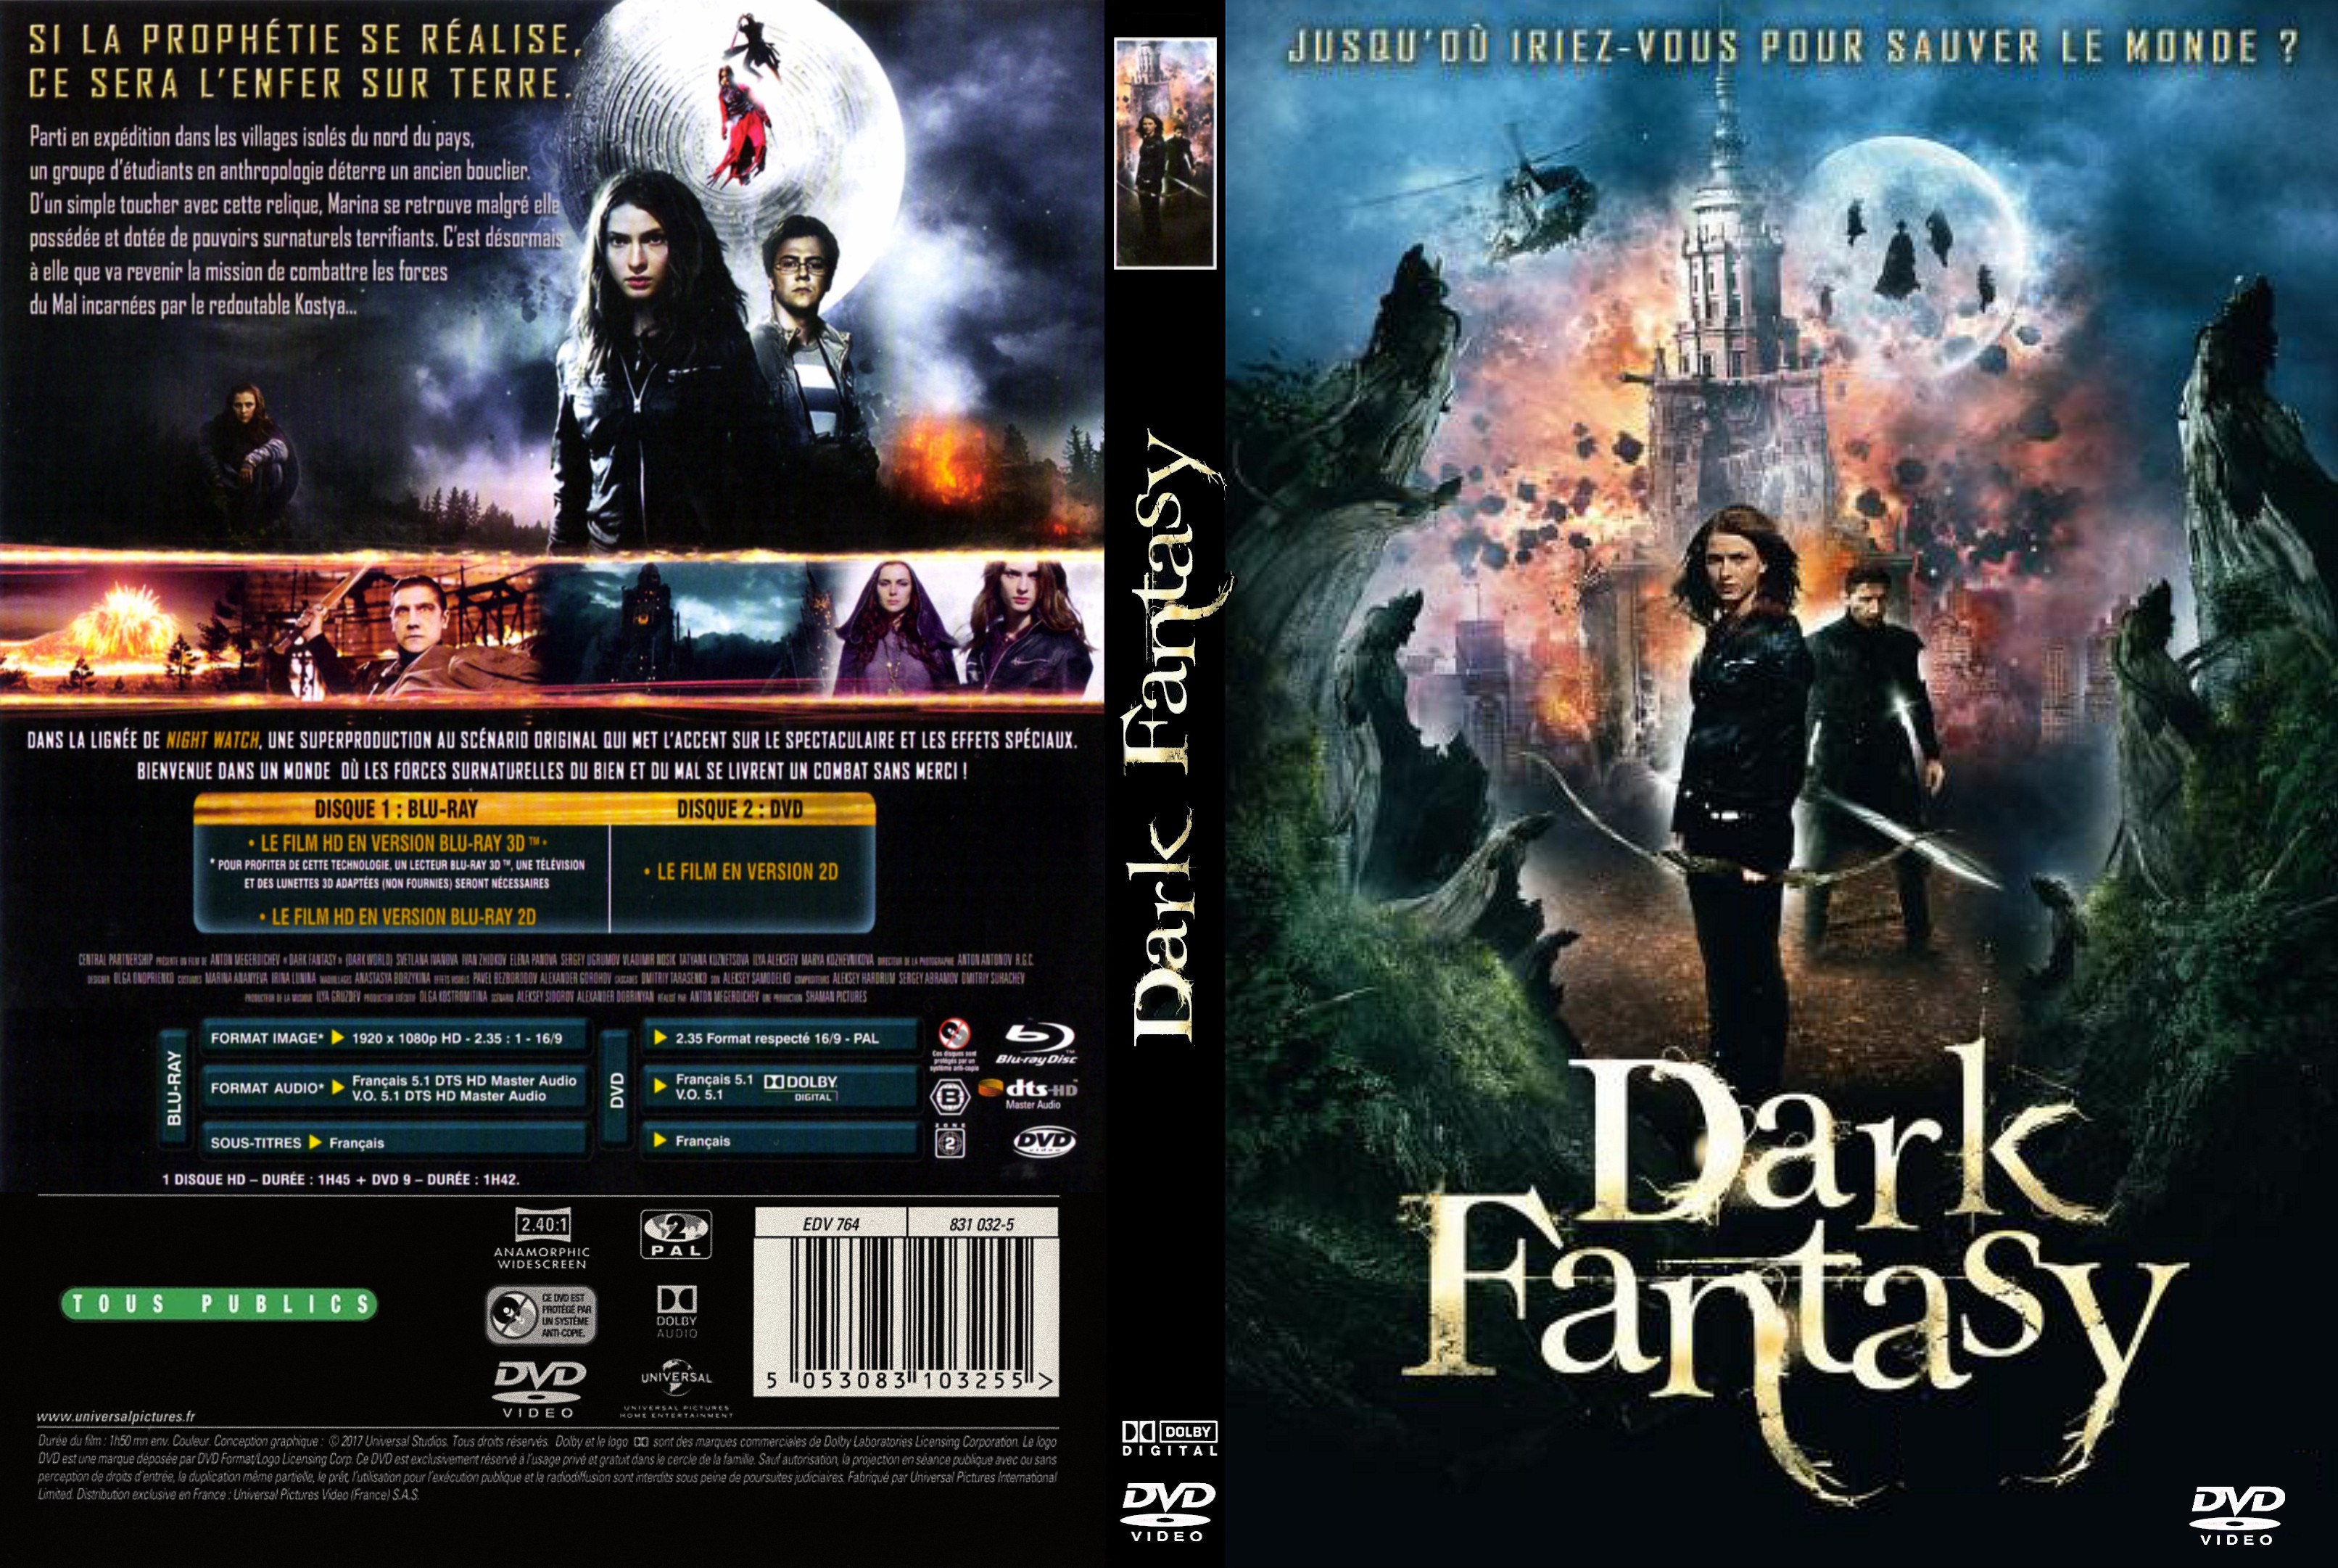 Jaquette DVD Dark Fantasy custom